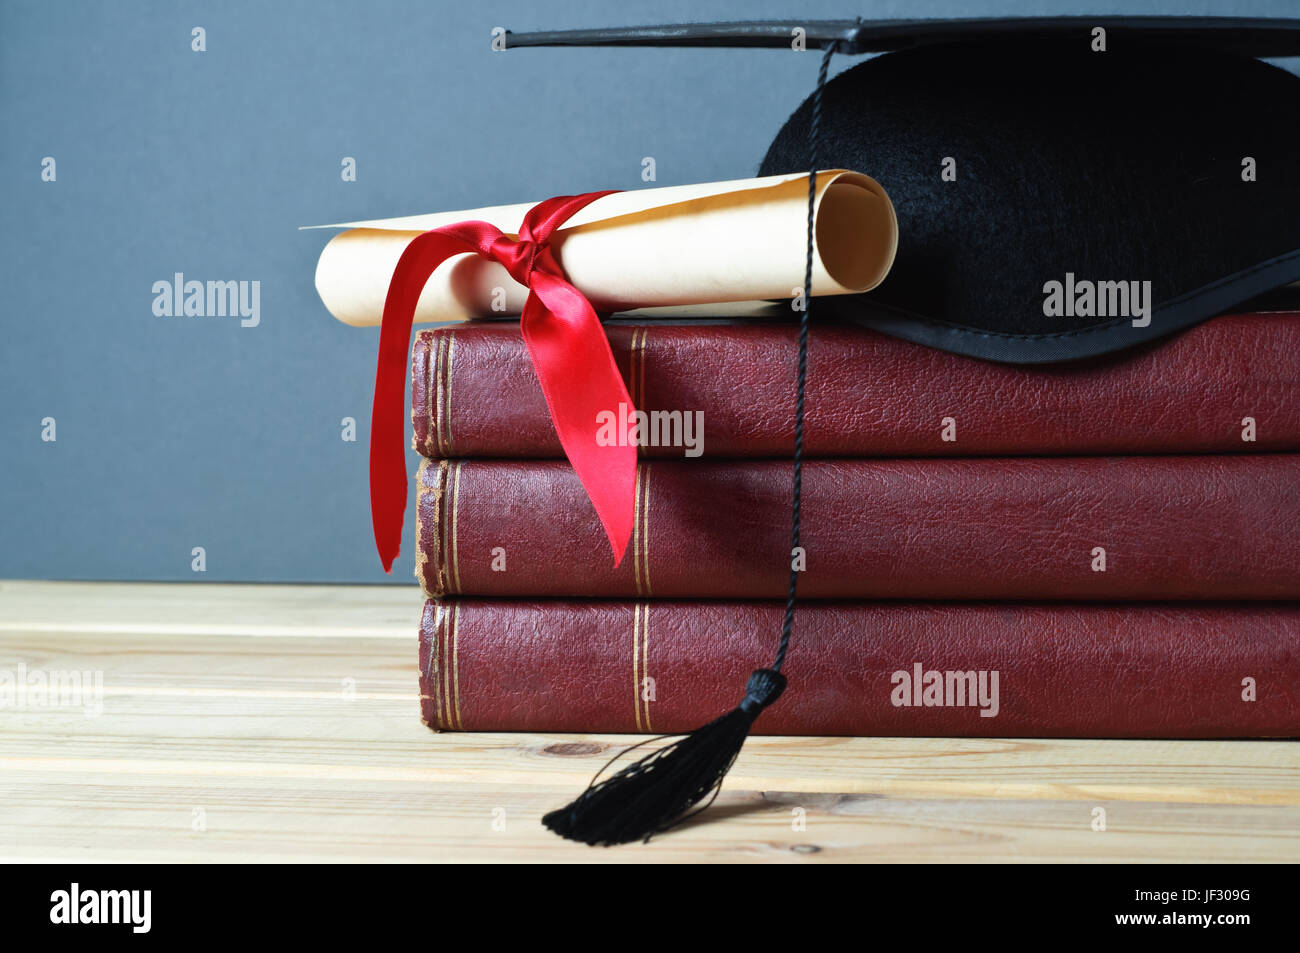 Abschluss Doktorhut und scrollen Sie nach gebunden mit rotem Band auf einem Stapel von alten, abgenutzten Bücher auf einem Leuchttisch Holz.  Grau hinterlegt. Stockfoto